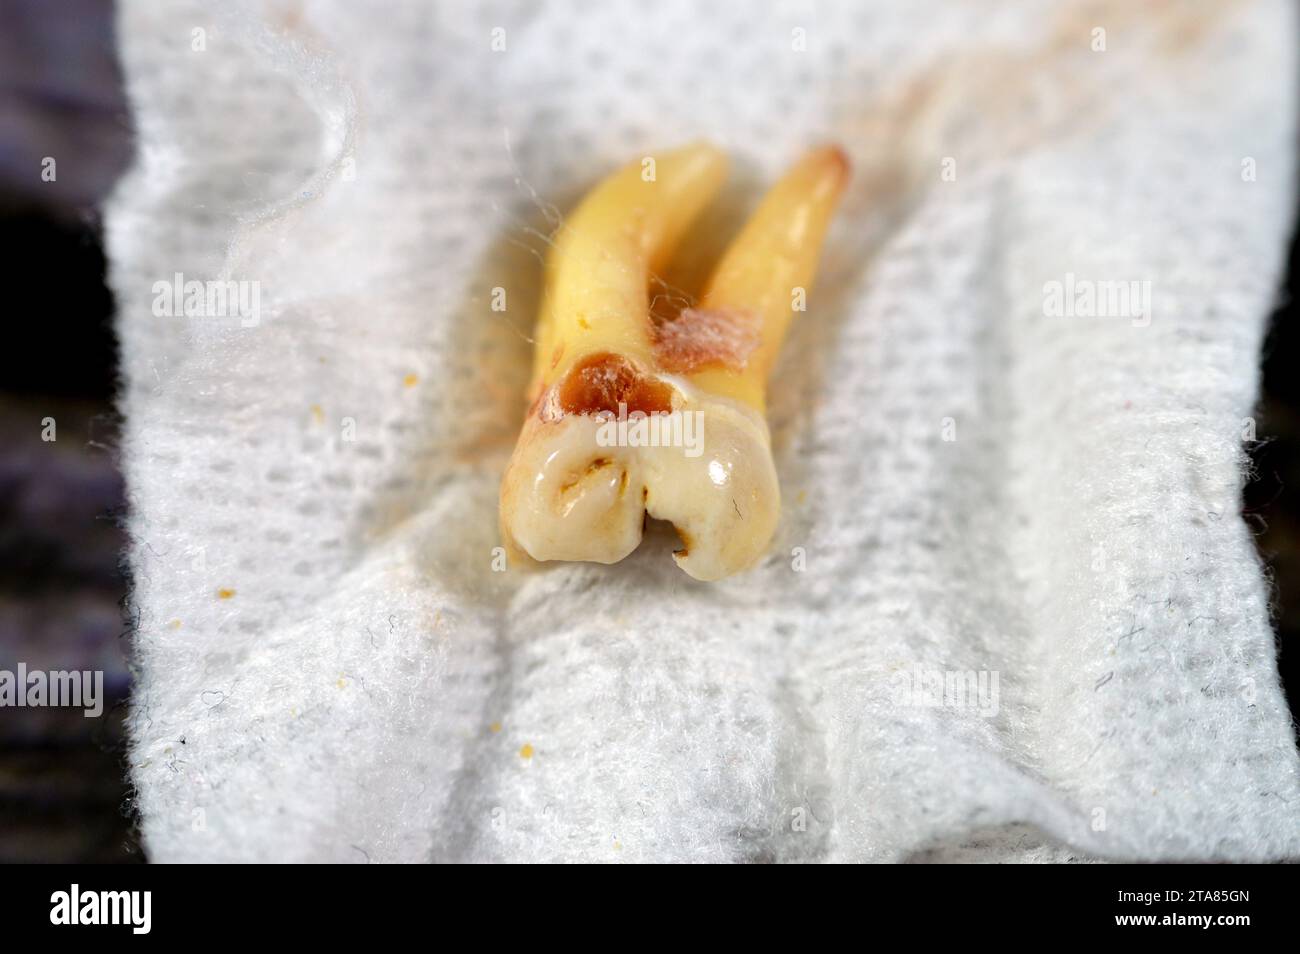 Sagesse extraite 8e dent inférieure droite avec une carie dentaire, après avoir exposé le nerf et la douleur intense, l'enflure et l'inflammation, les dents de sagesse sont les molaires Banque D'Images